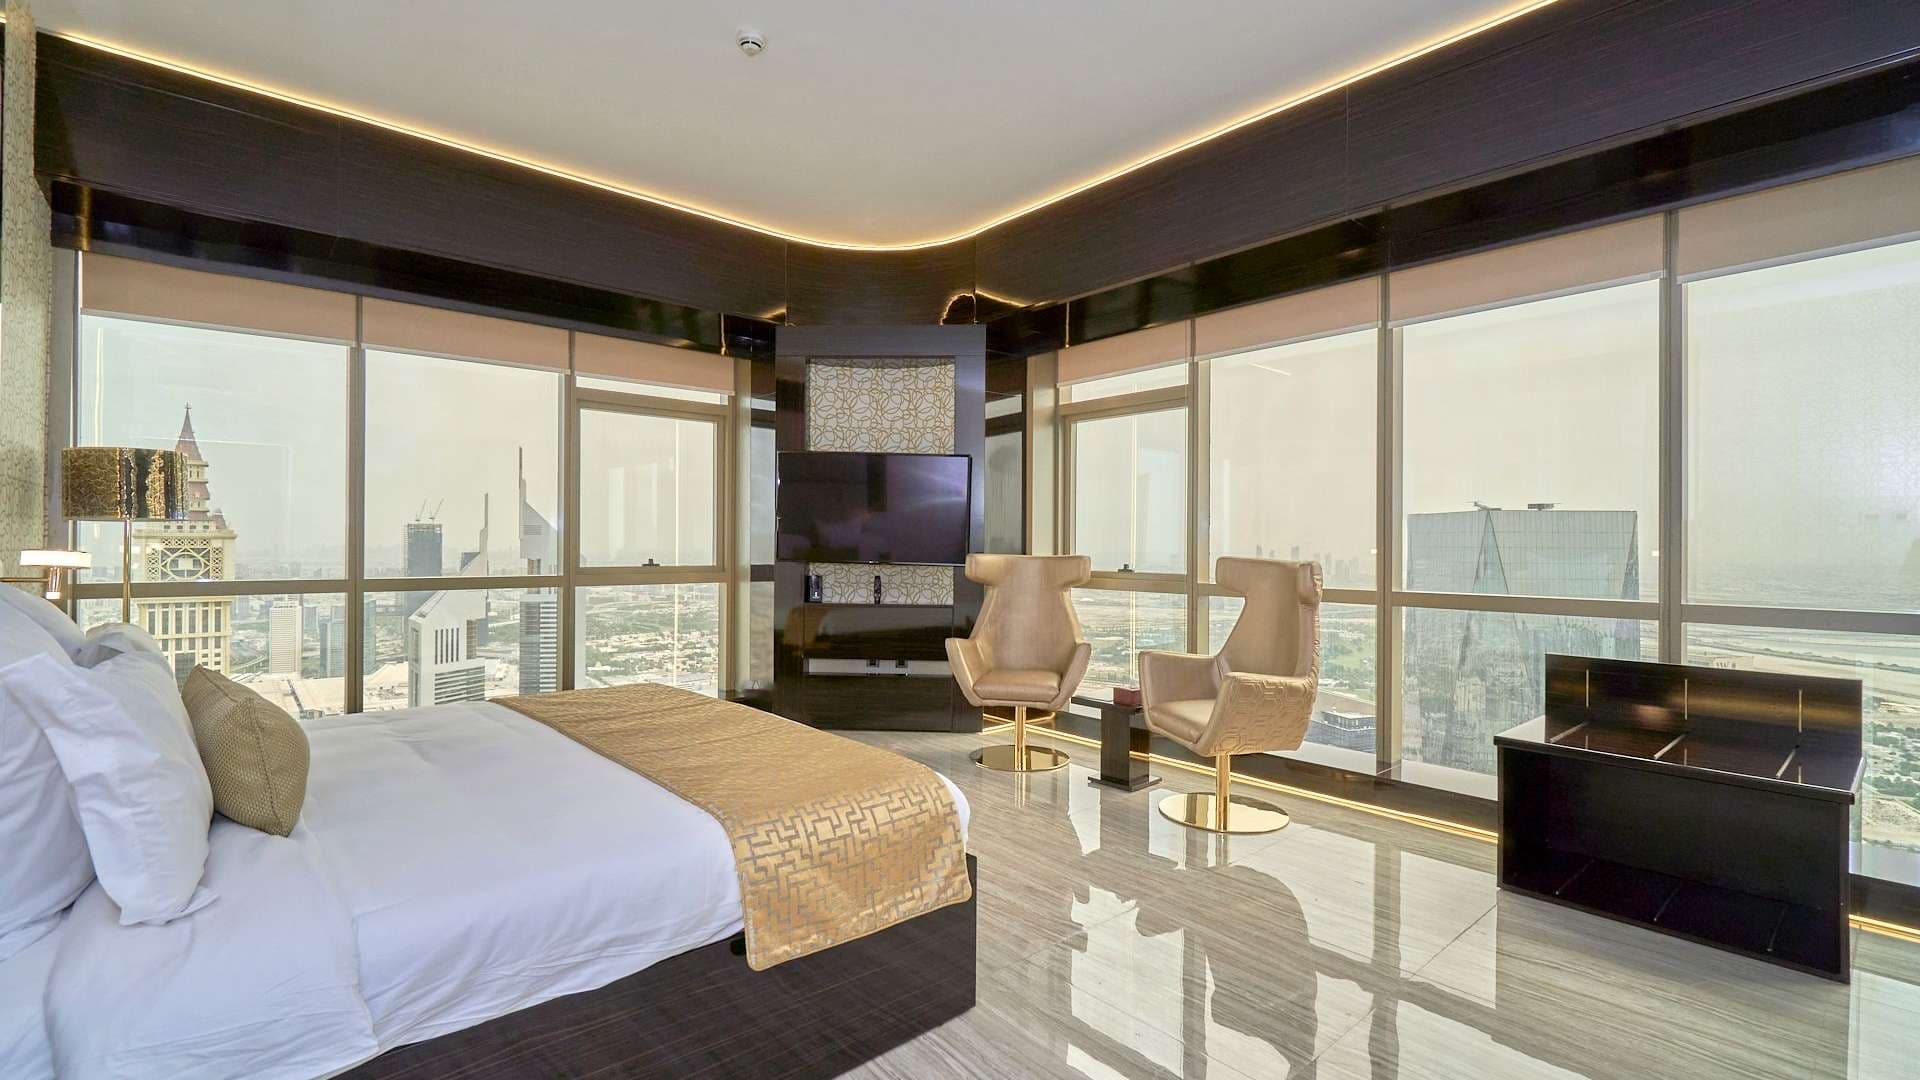 5 Bedroom Penthouse For Rent Difc Tower Lp08634 283d901c02507000.jpeg